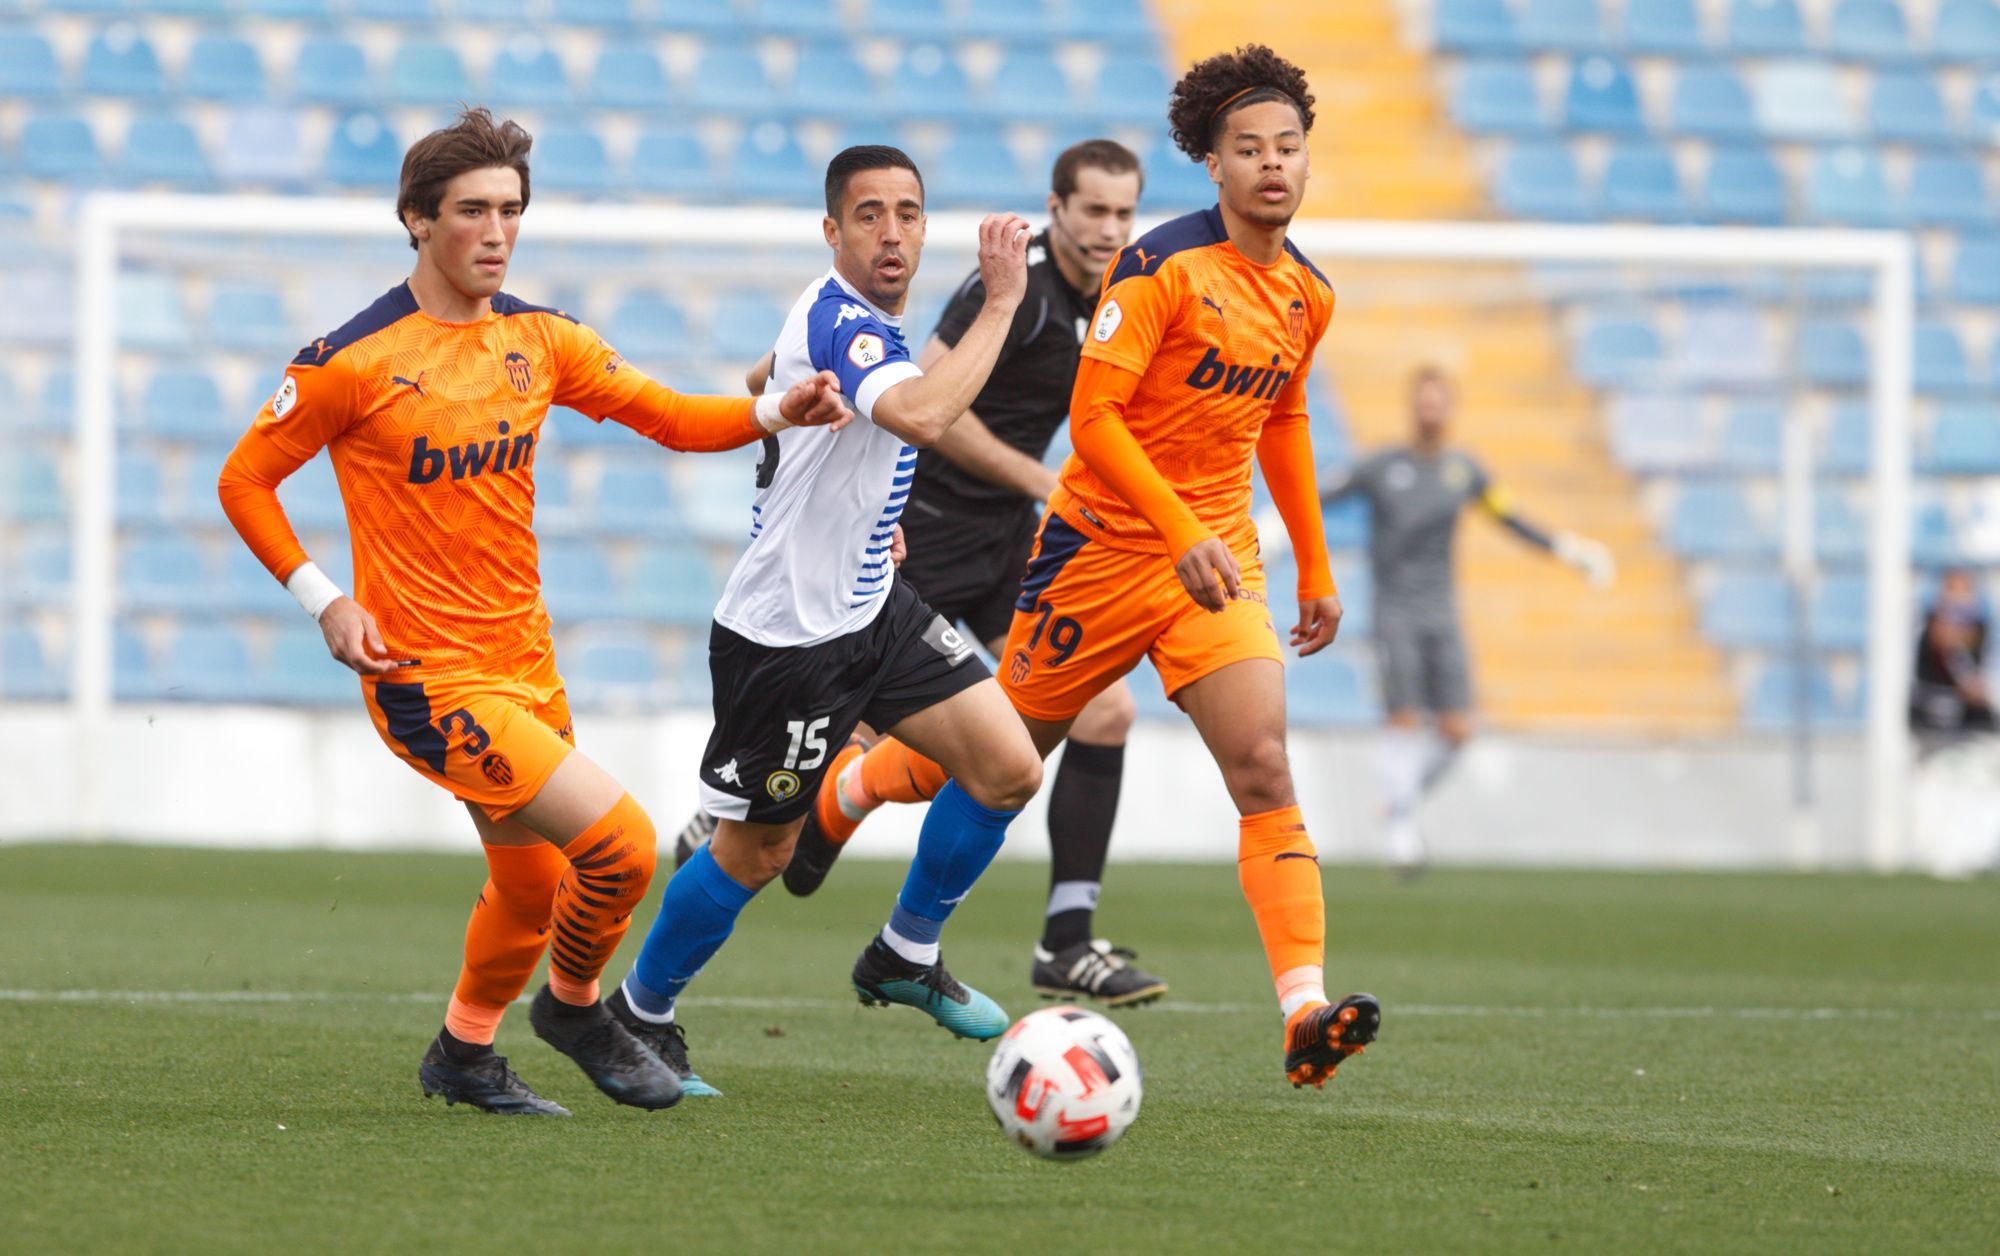 Hércules - Valencia Mestalla, las imágenes del partido